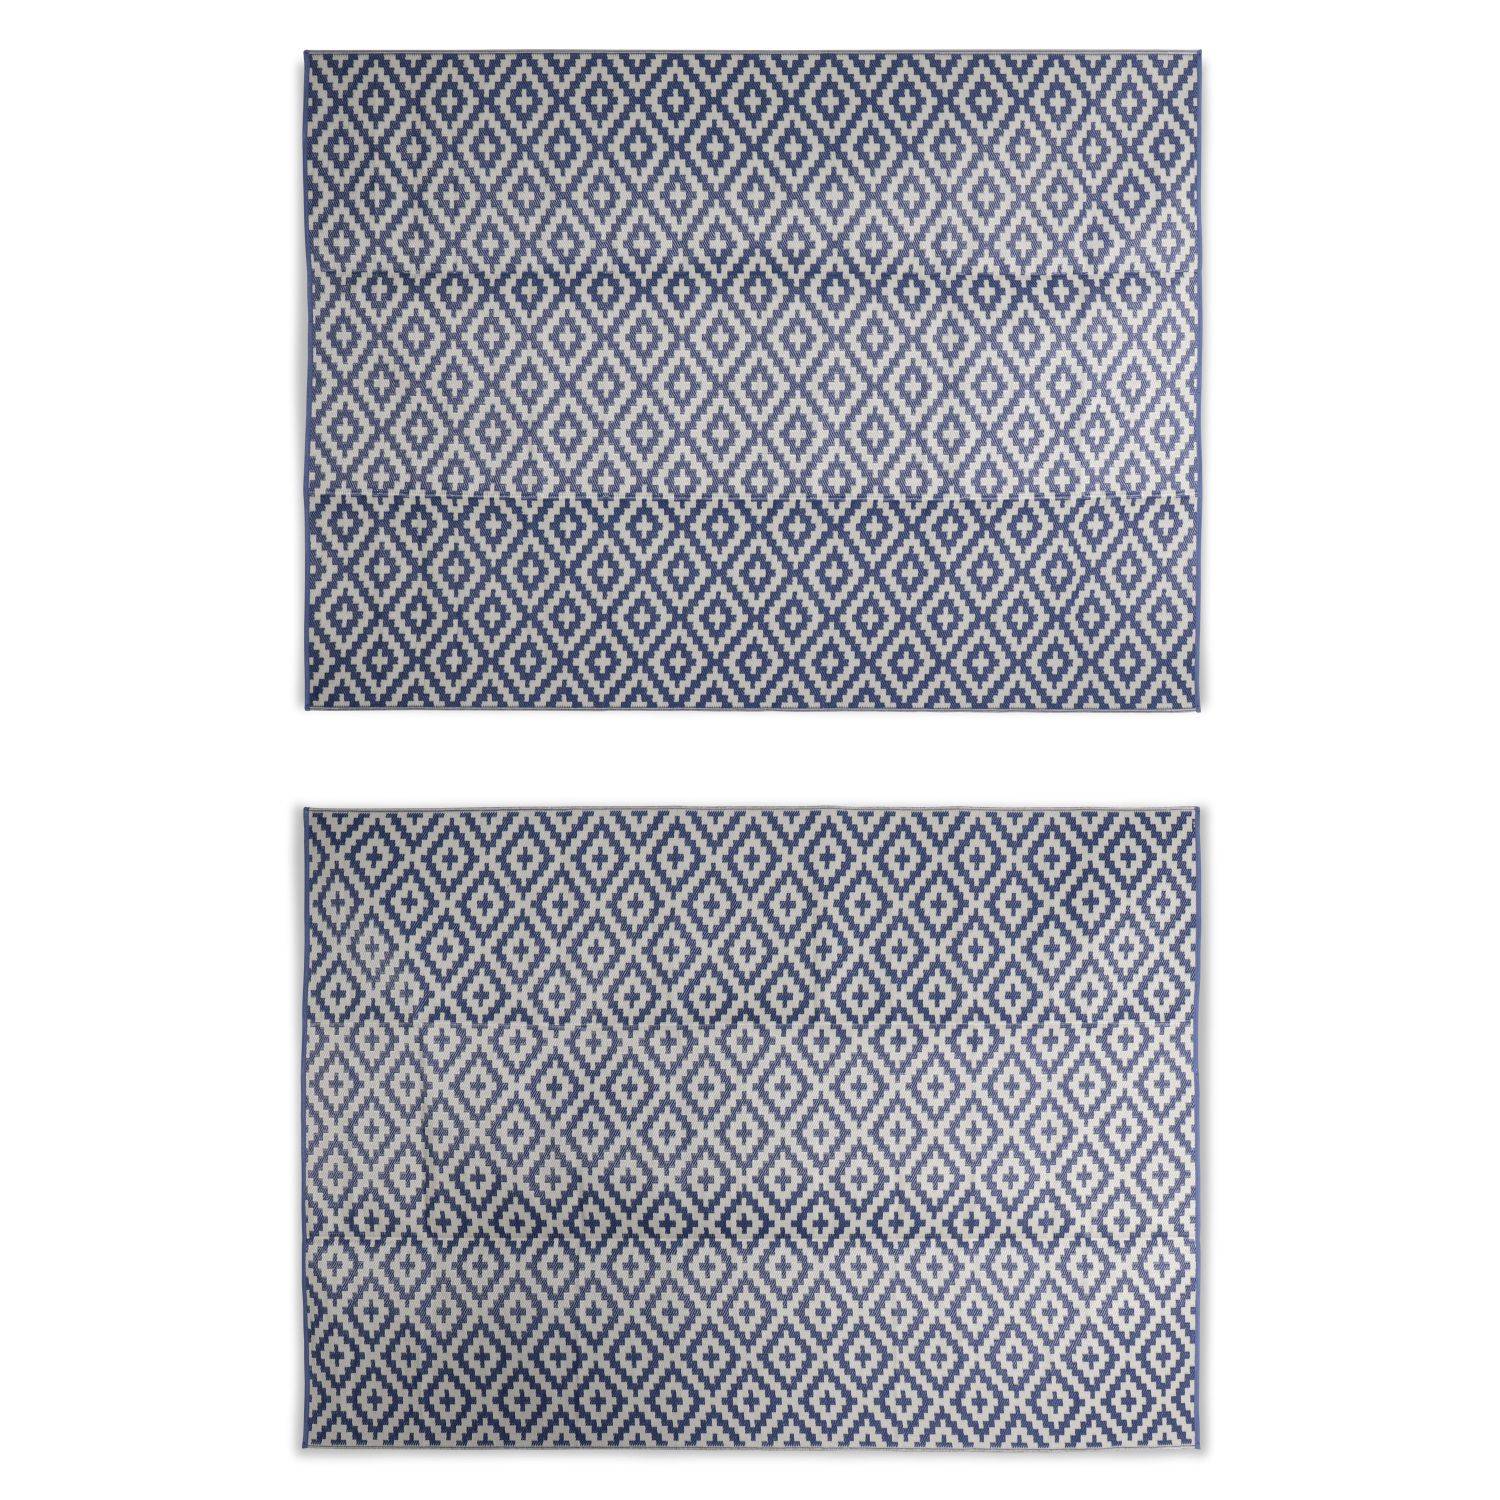 Tapis d’extérieur 270x360cm STOCKHOLM - Rectangulaire, motif losanges bleu / beige, jacquard, réversible, indoor / outdoor,,sweeek,Photo2